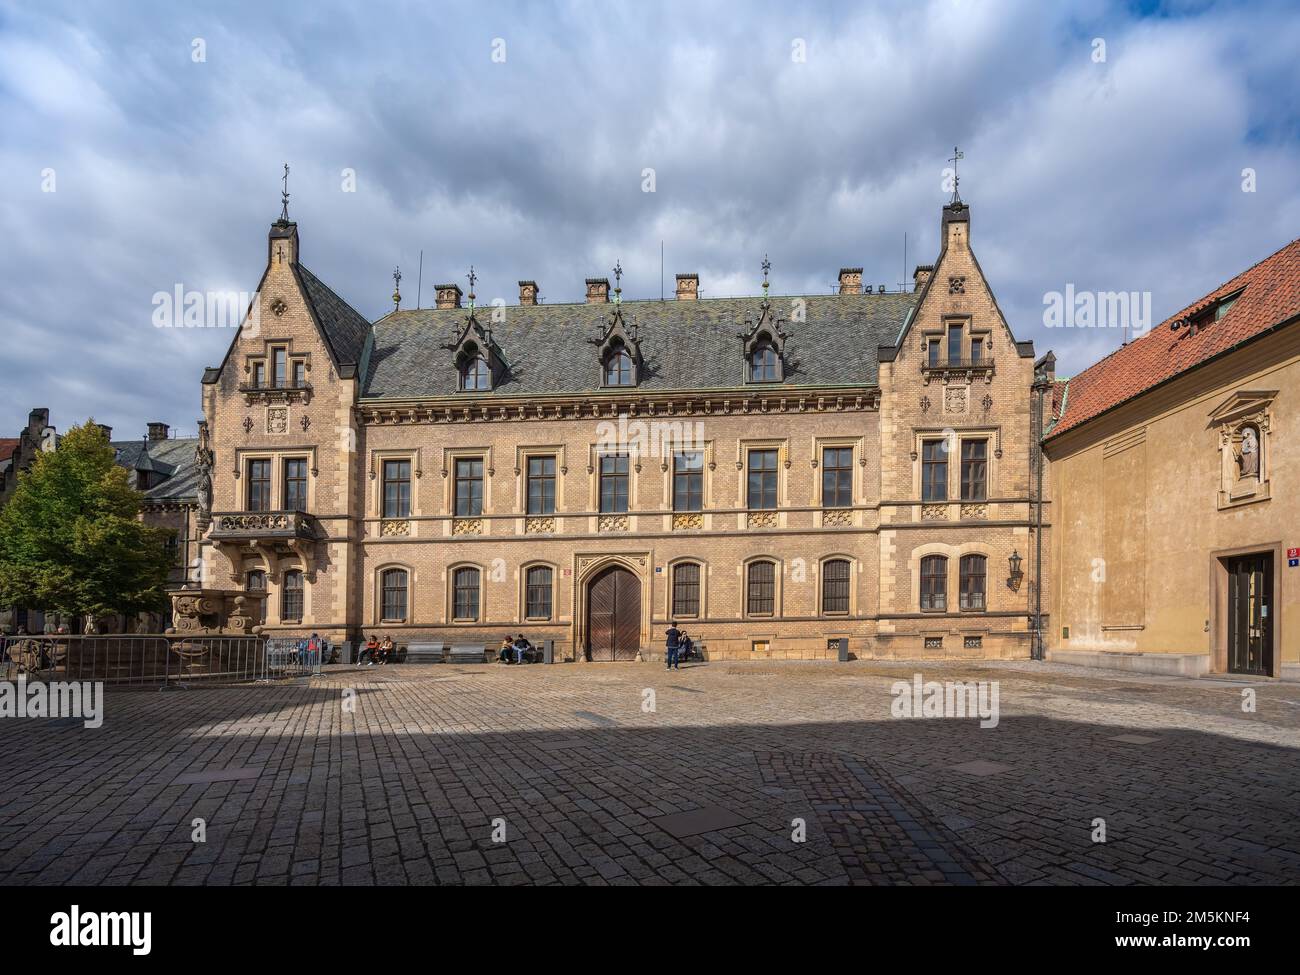 Neue Provost Residenz und Fontana Cararati am St. George Platz in der Prager Burg - Prag, Tschechische Republik Stockfoto